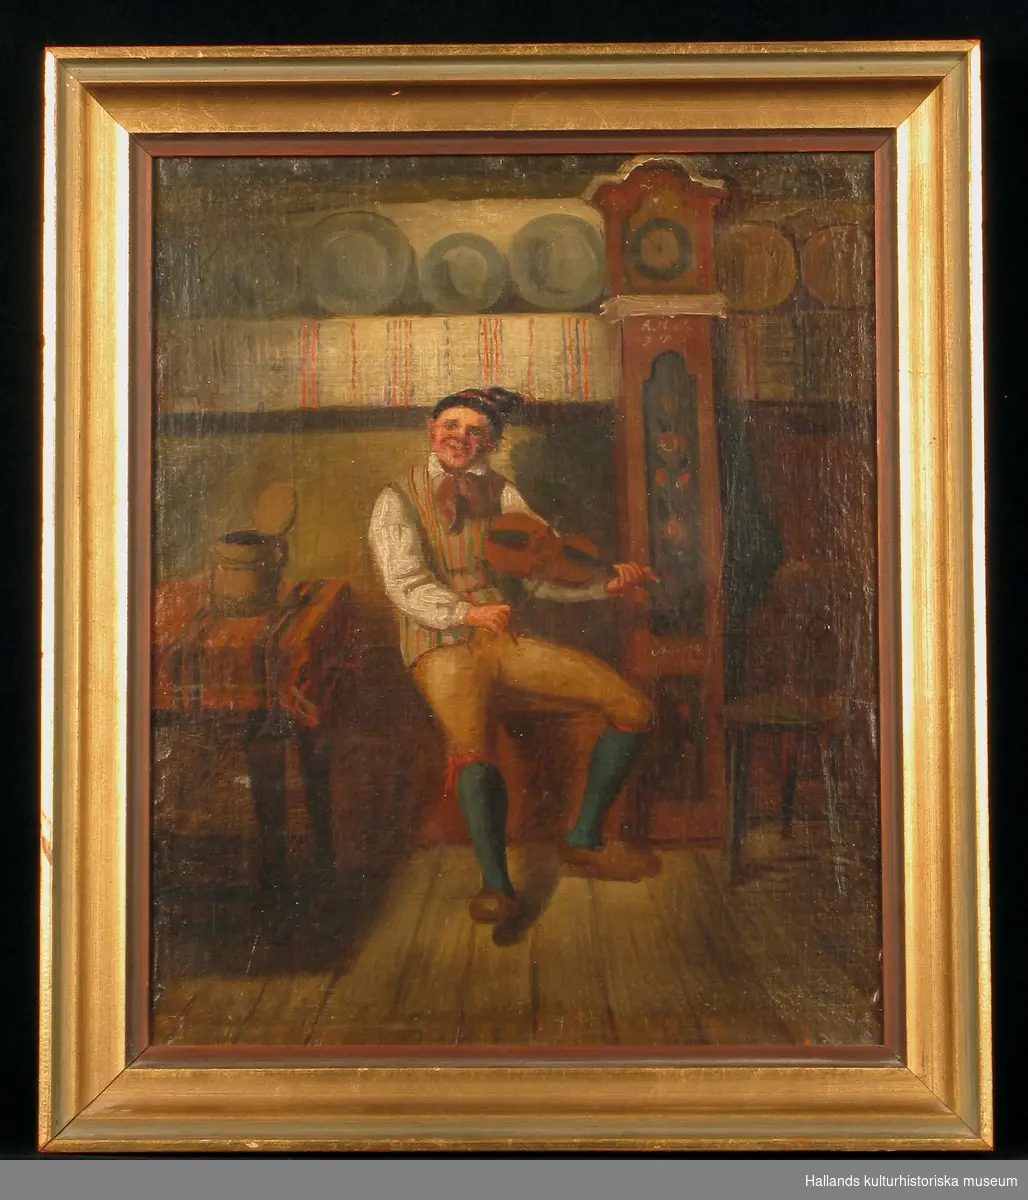 Oljemålning föreställande August Bondesson spelande fiol i en ryggåsstuga. Guldfärgad träram. Av ritmästare Carl Gustaf  Holmgren.